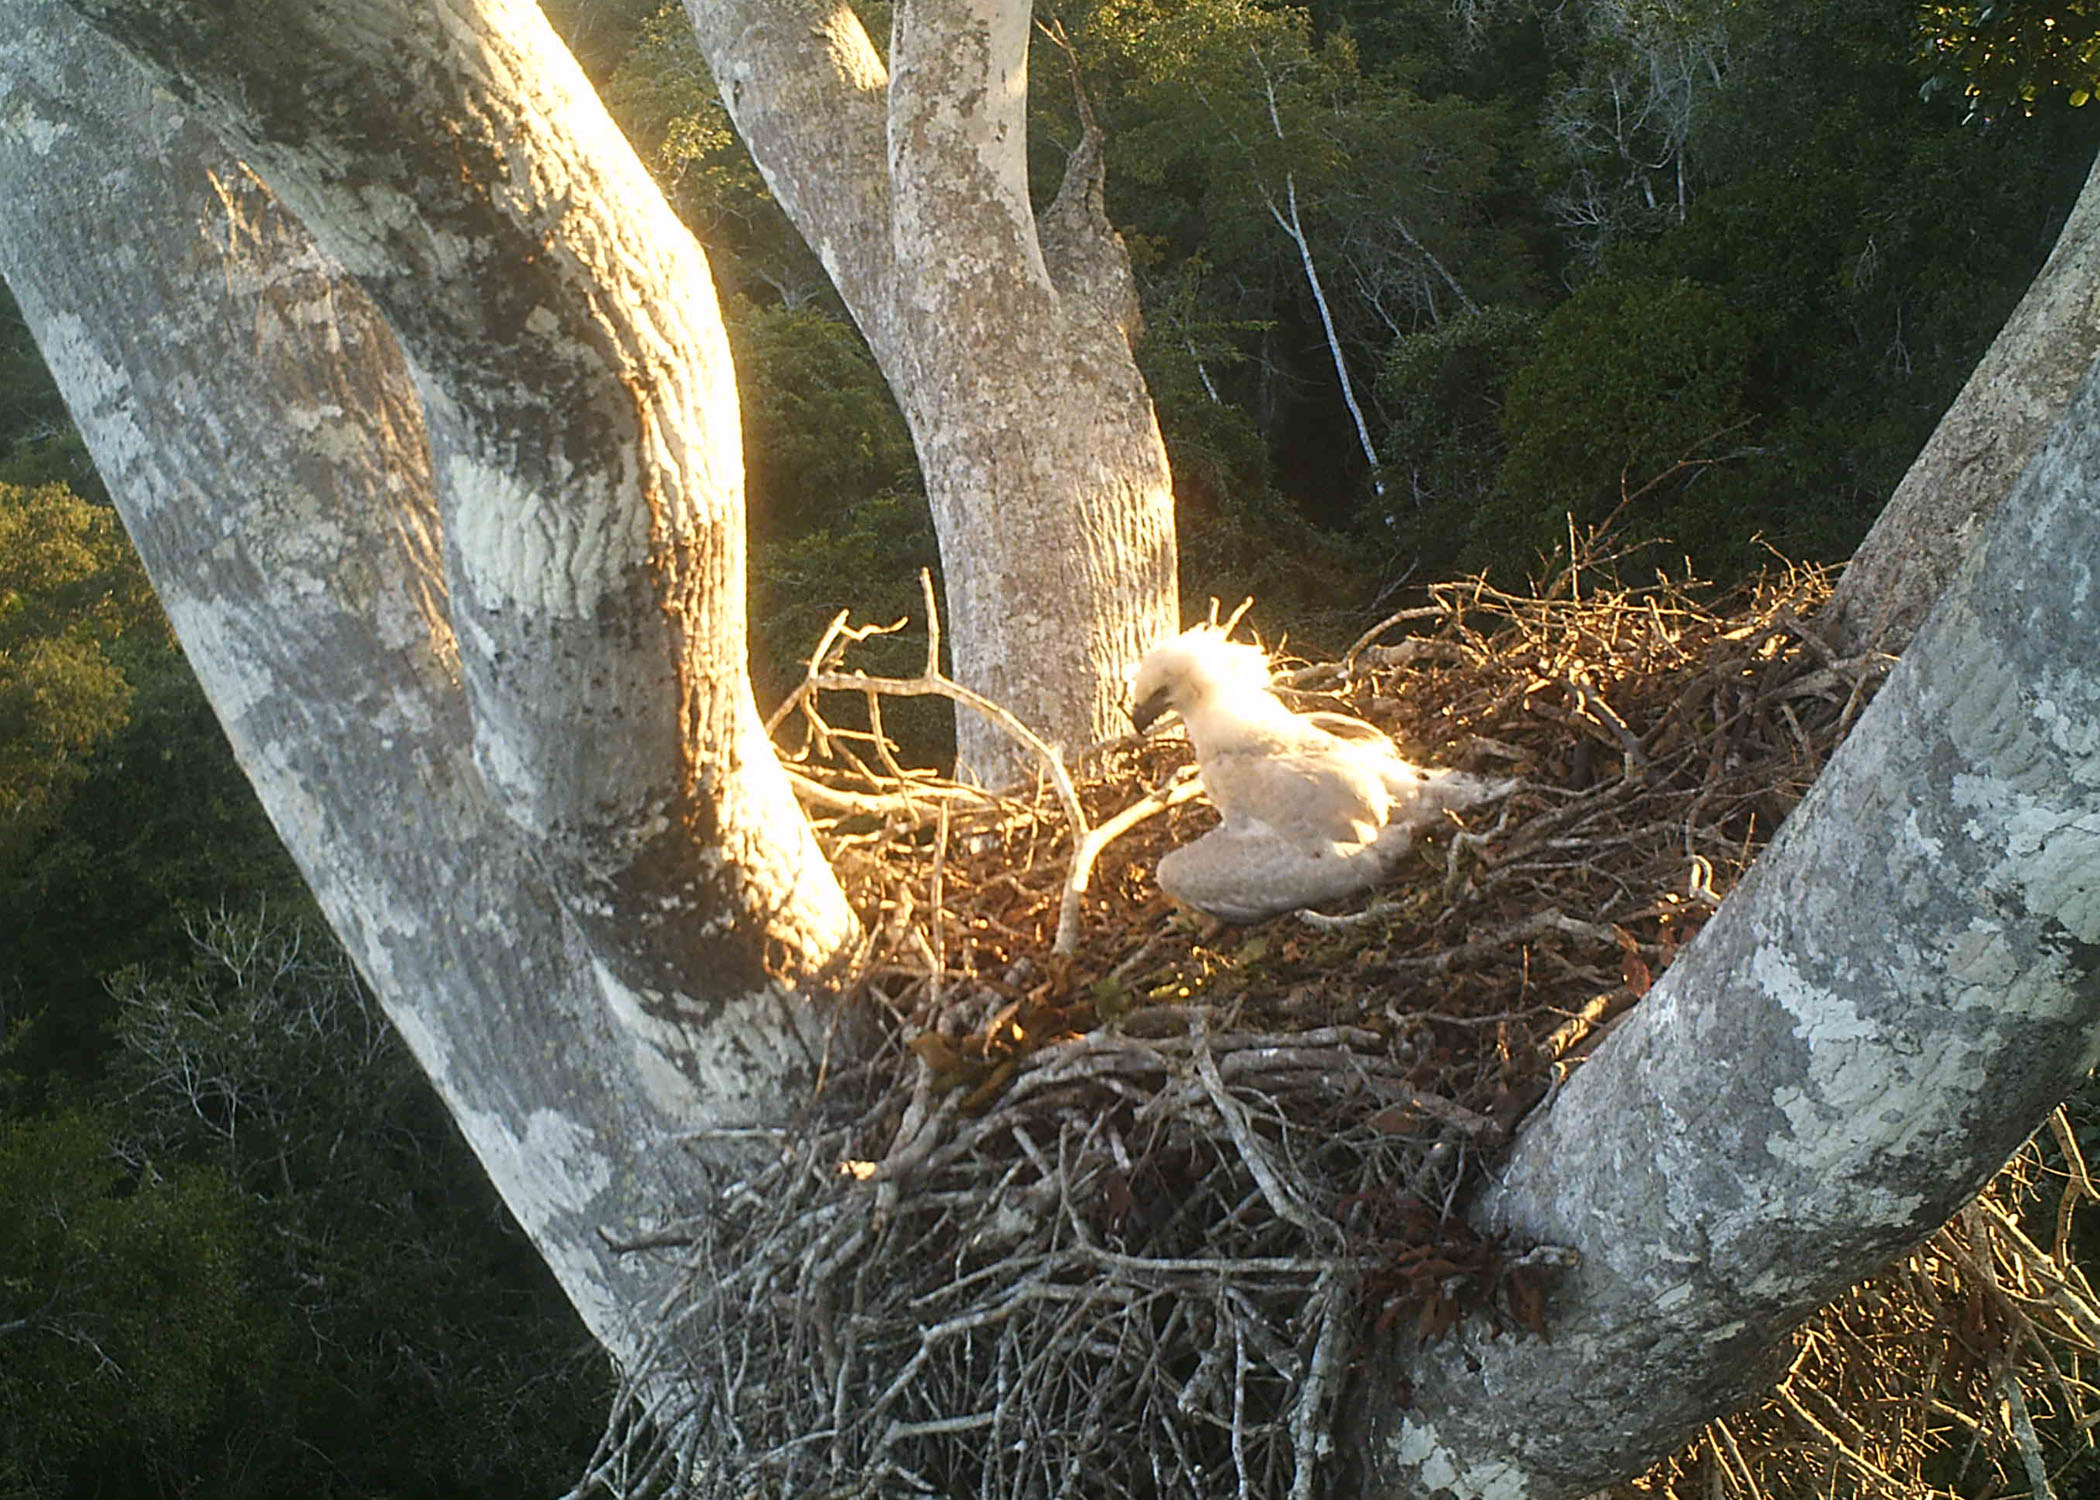 Filhote de harpia, de penugem branca, vista no ninho, no alto de uma árvore, com vista da floresta